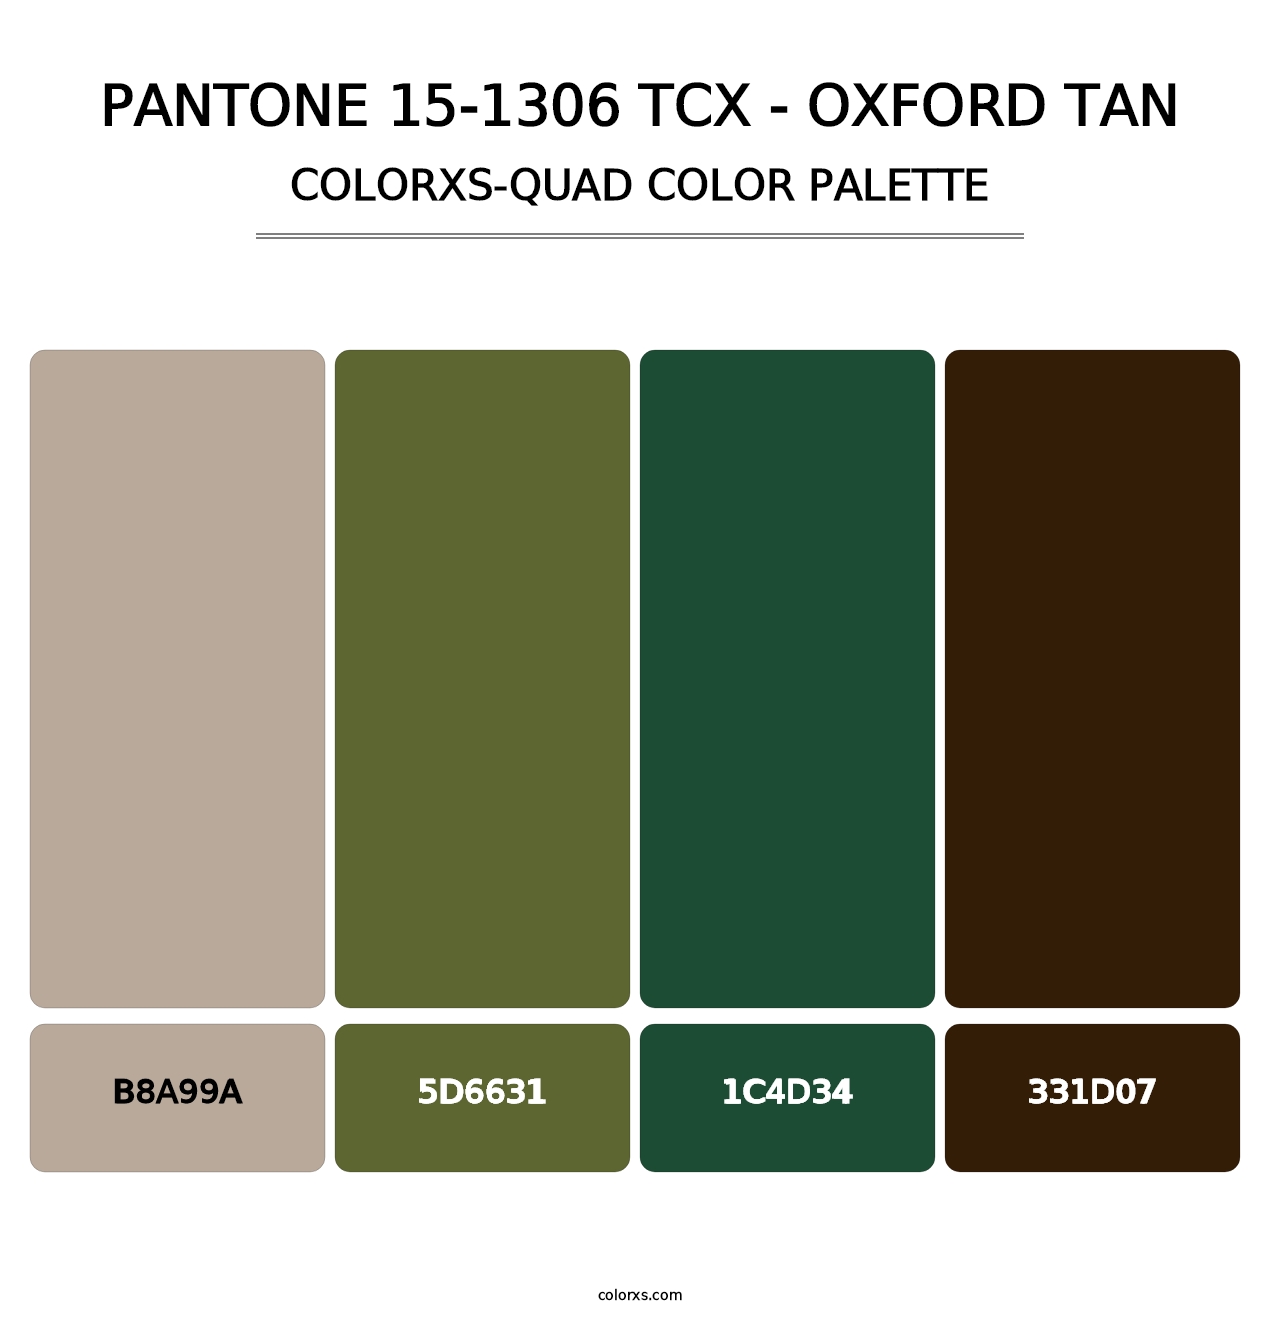 PANTONE 15-1306 TCX - Oxford Tan - Colorxs Quad Palette